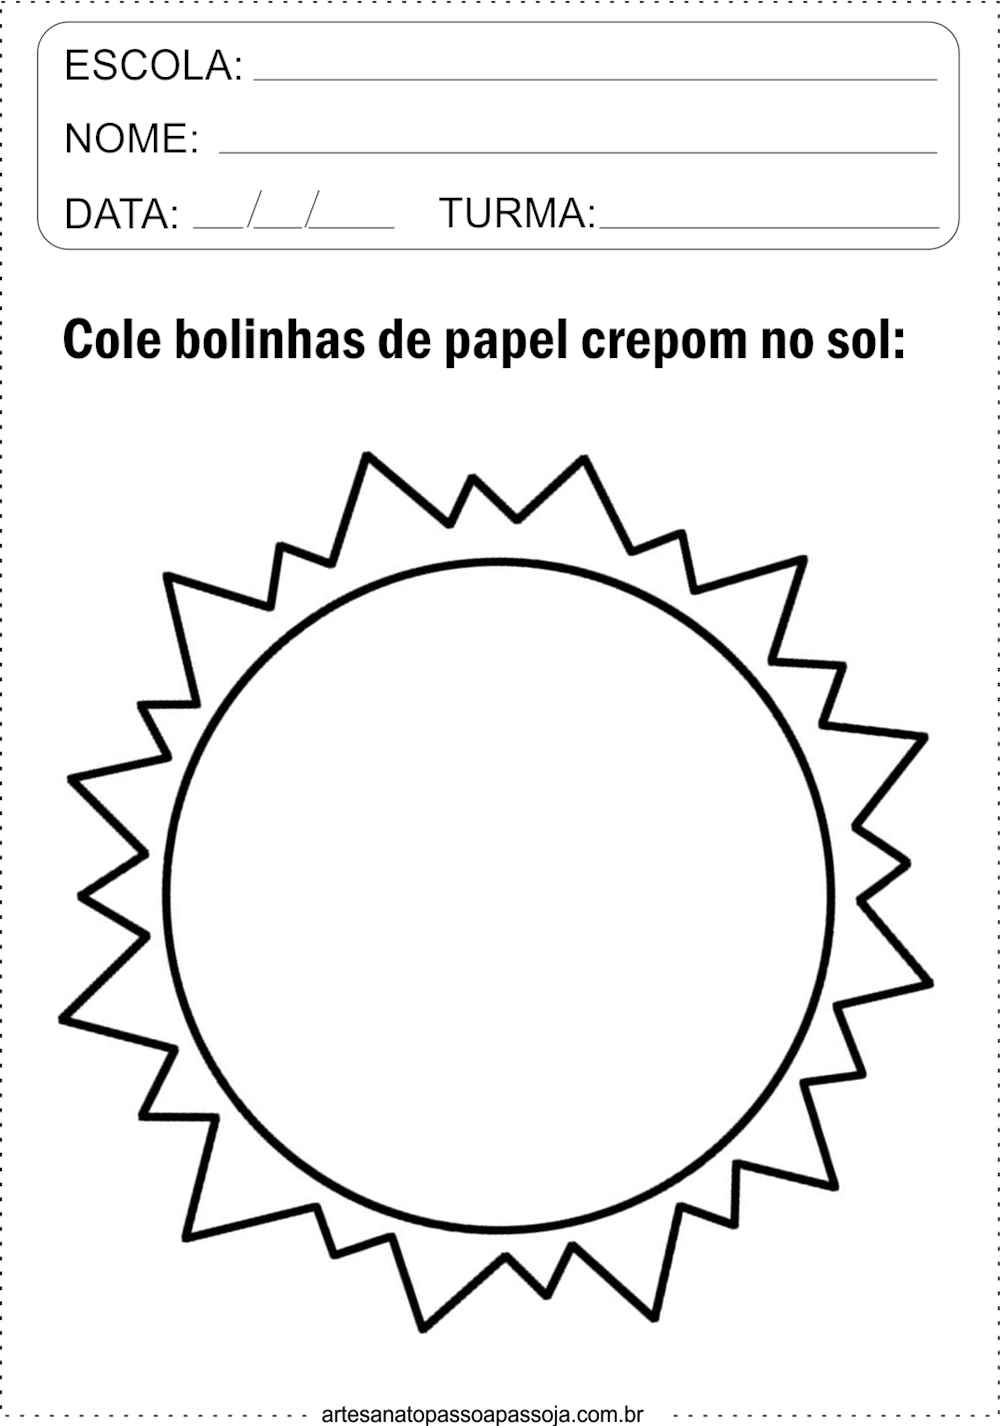 Atividade de sol com papel crepom